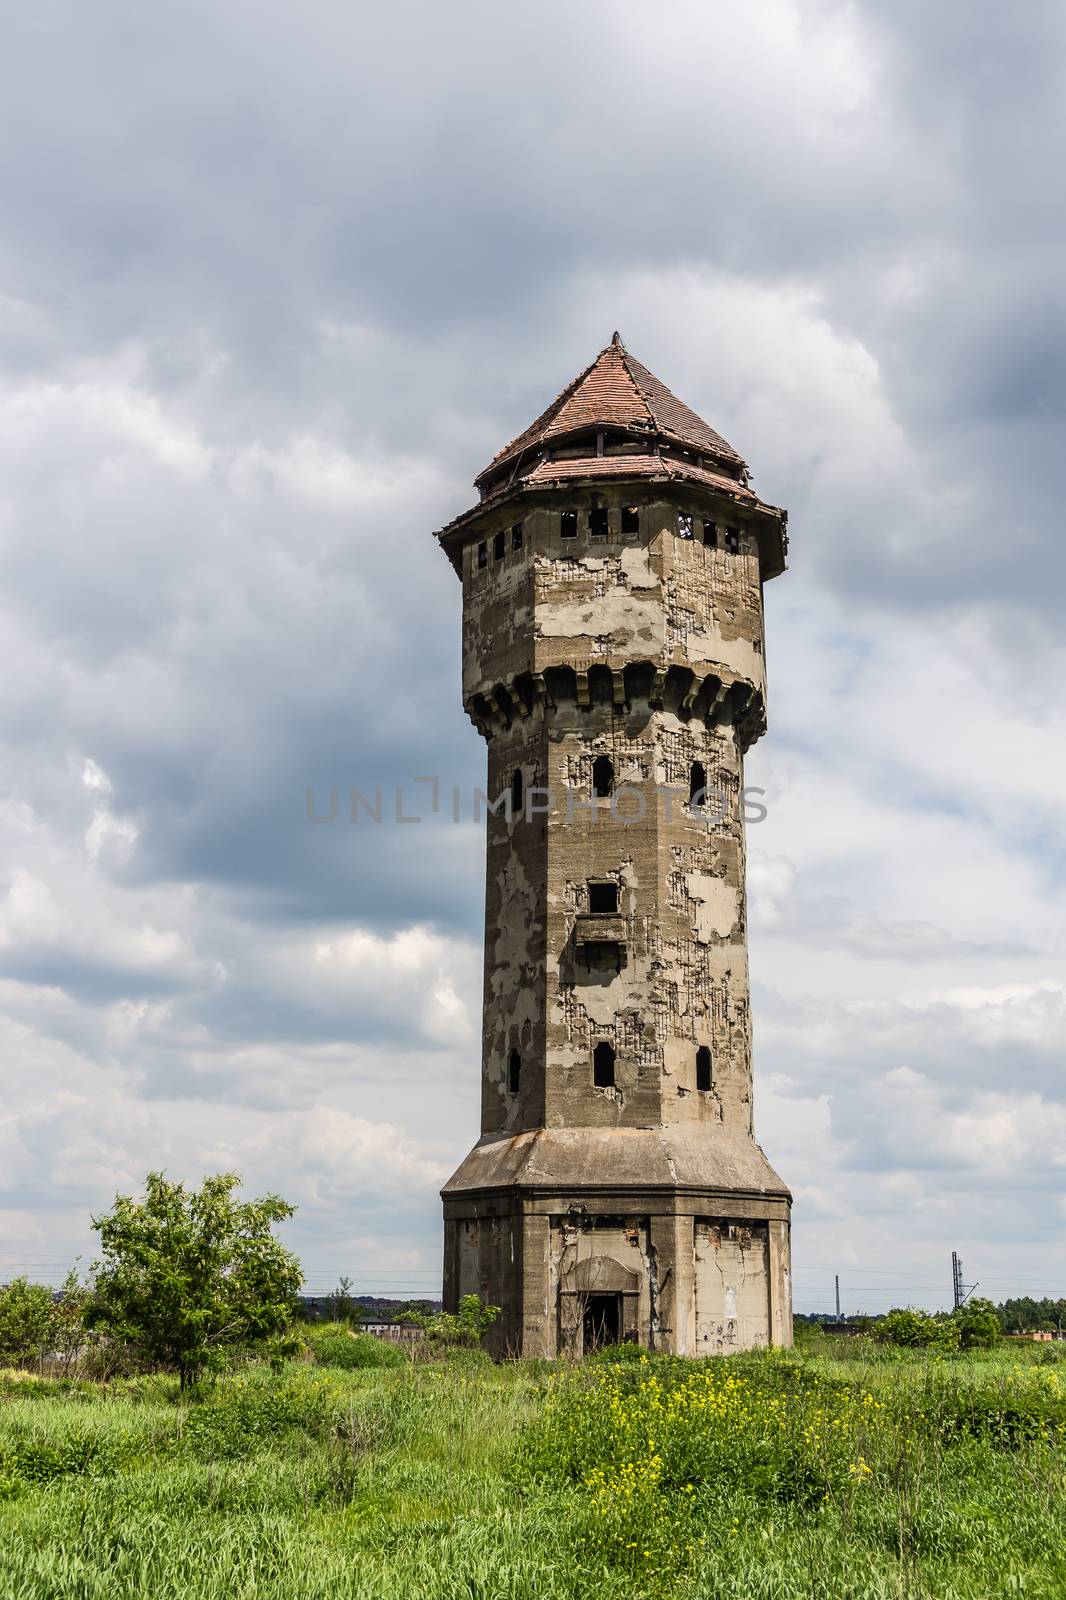 Devastated  water tower in former, Uthemann Ironwork in Katowice, Silesia region, Poland.